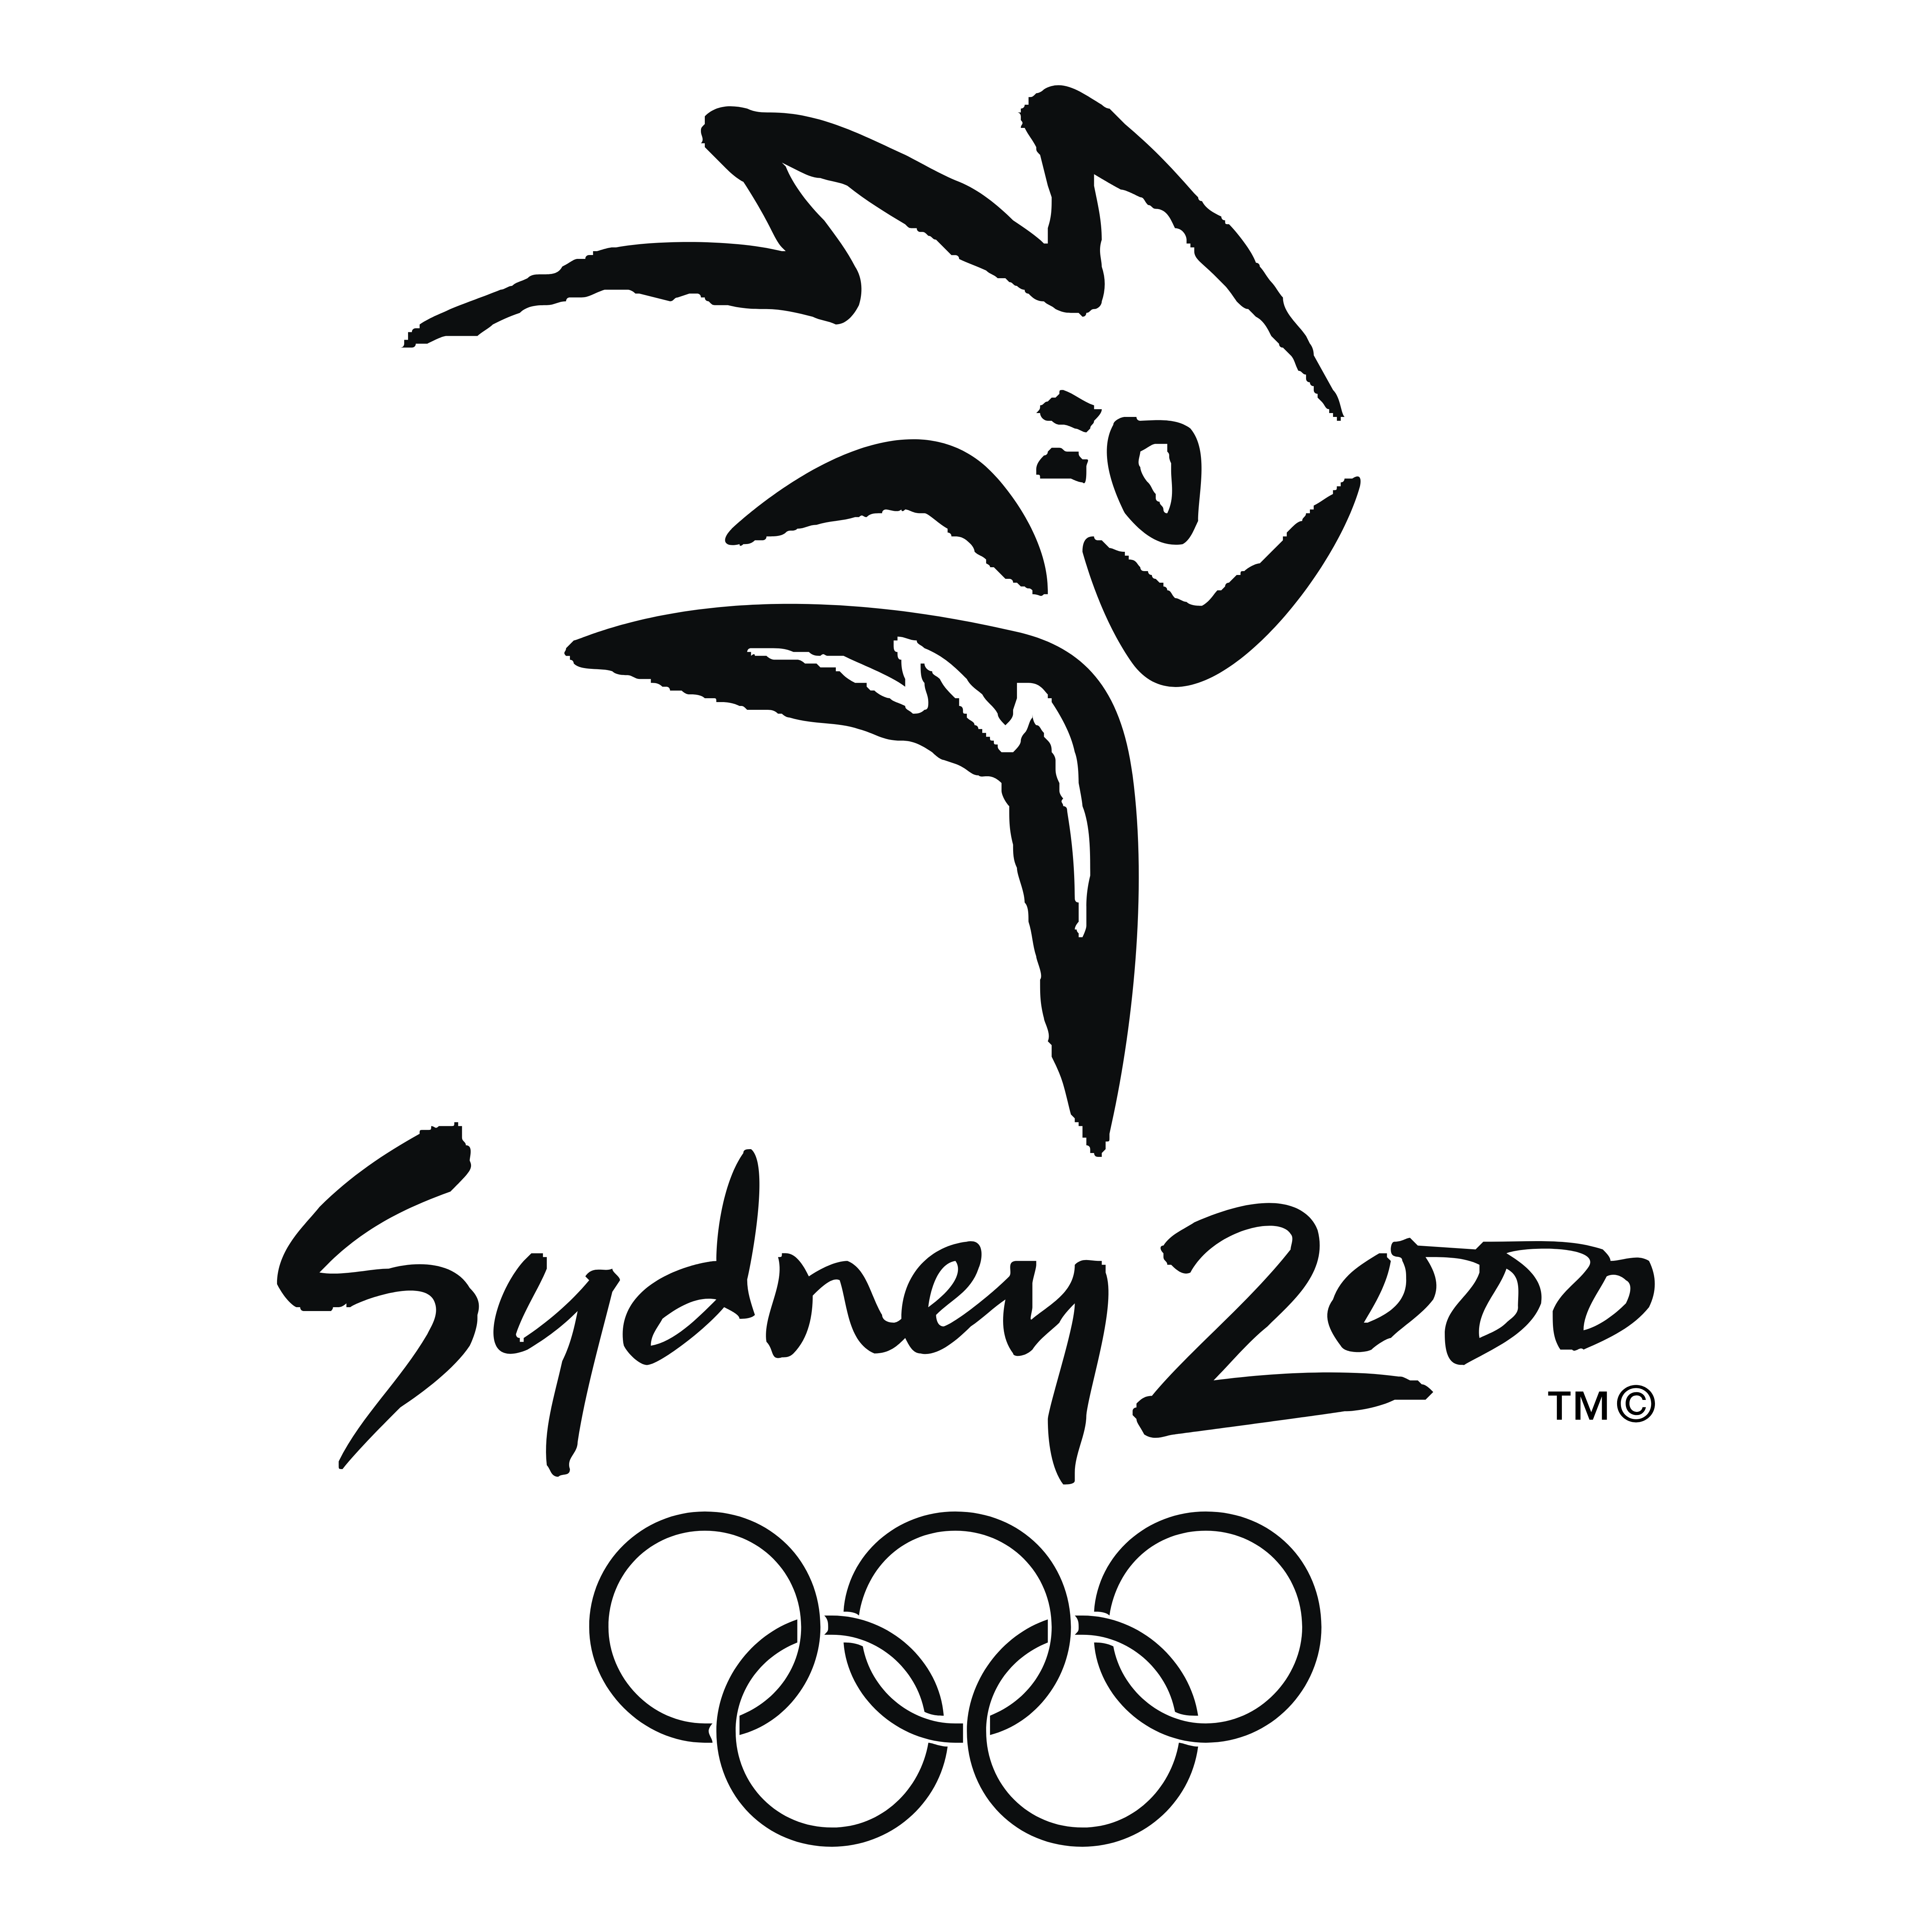 Сидней 2000